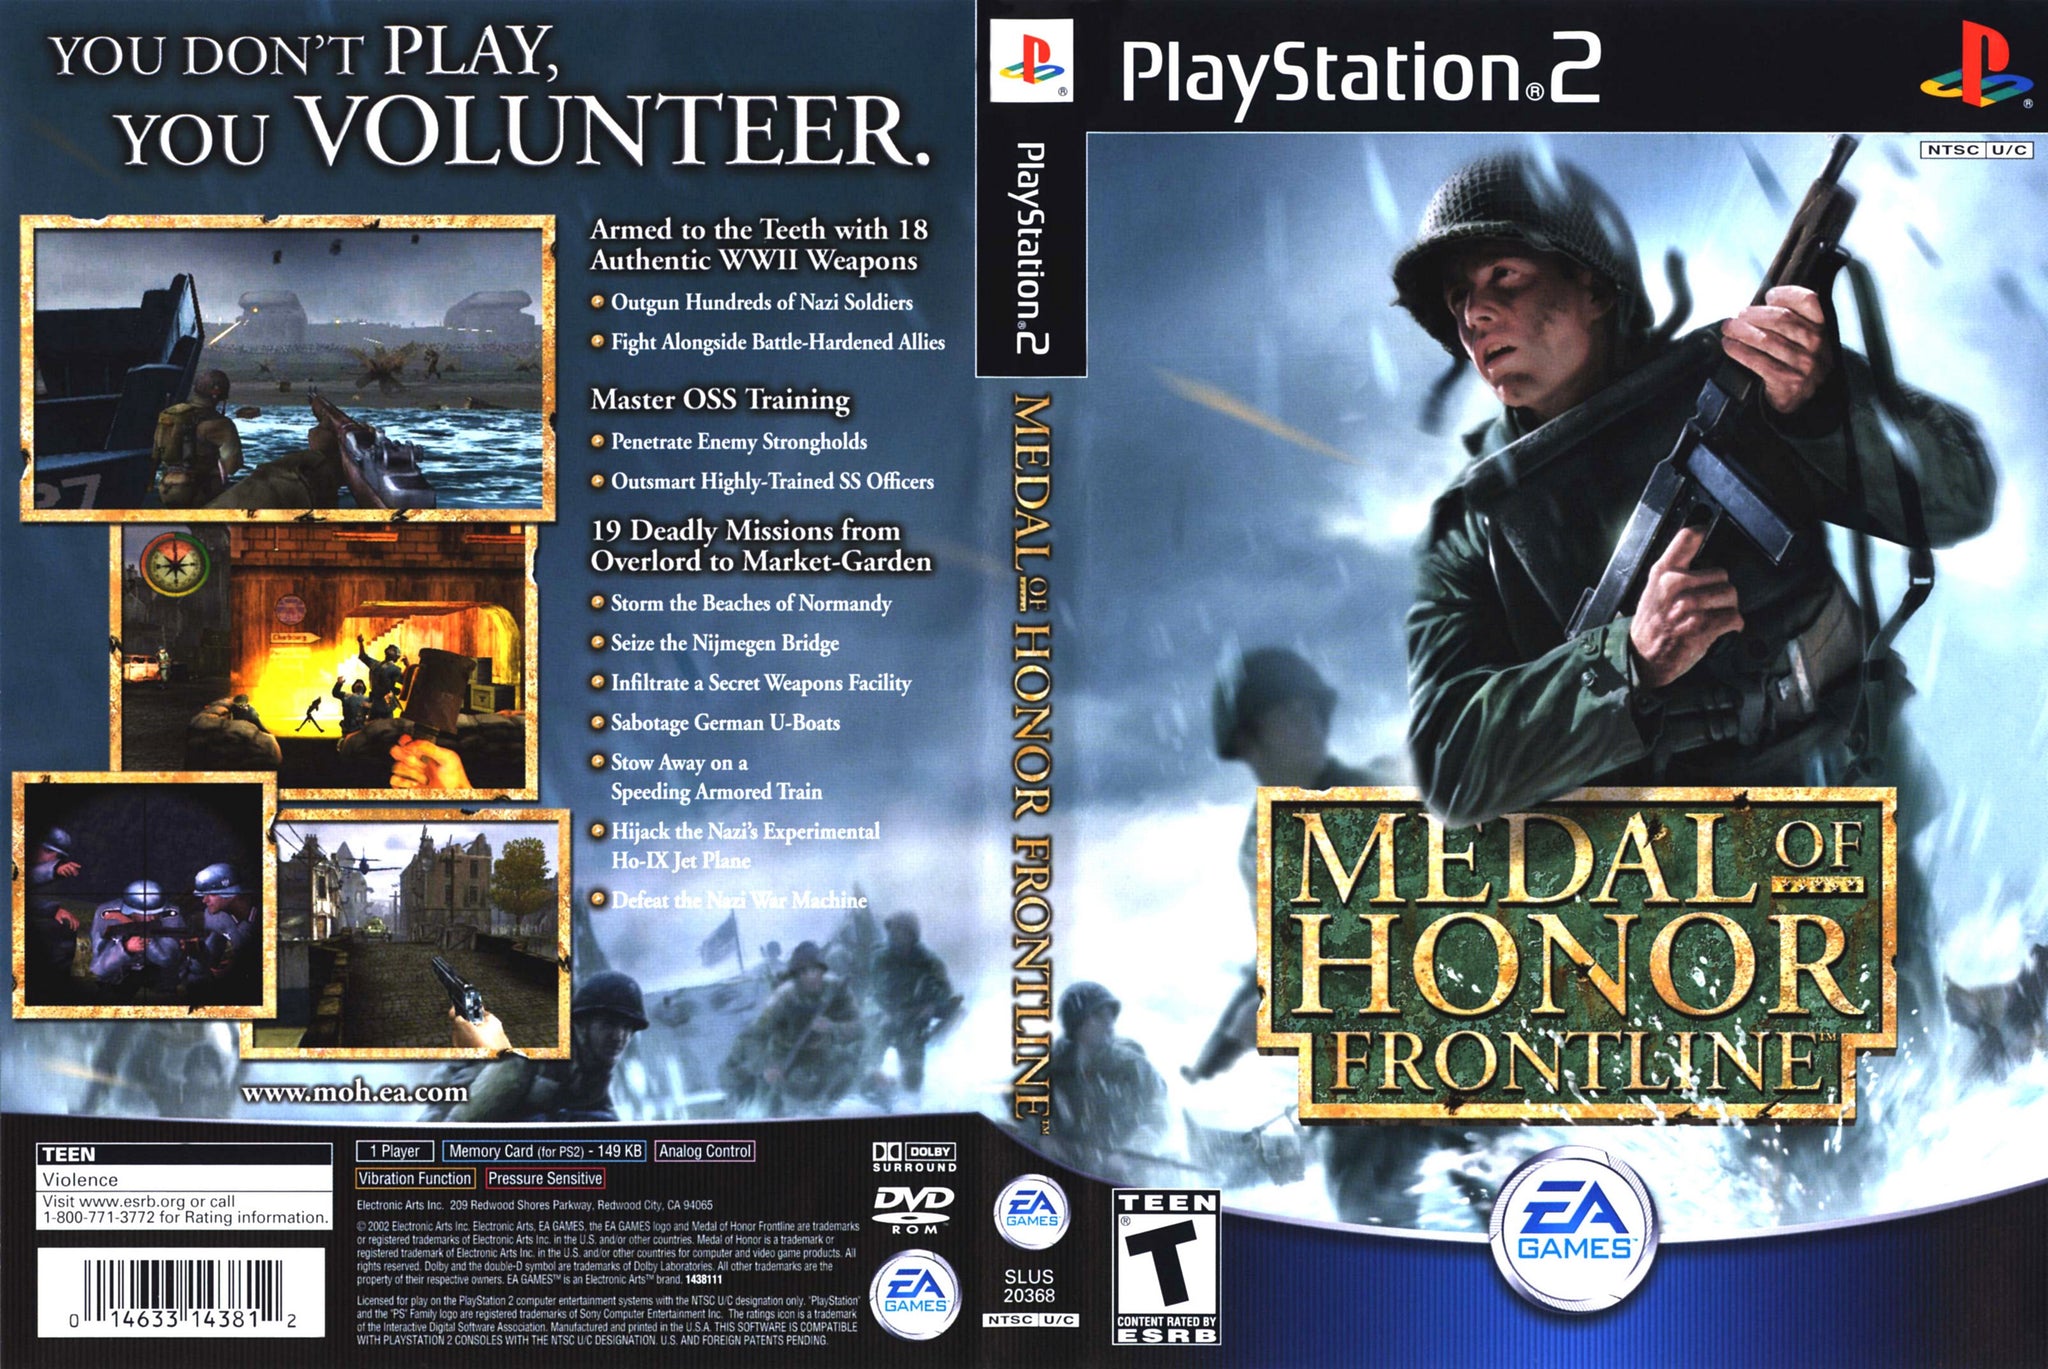 Jogo Medal Of Honor Frontline PS2 Usado - Meu Game Favorito